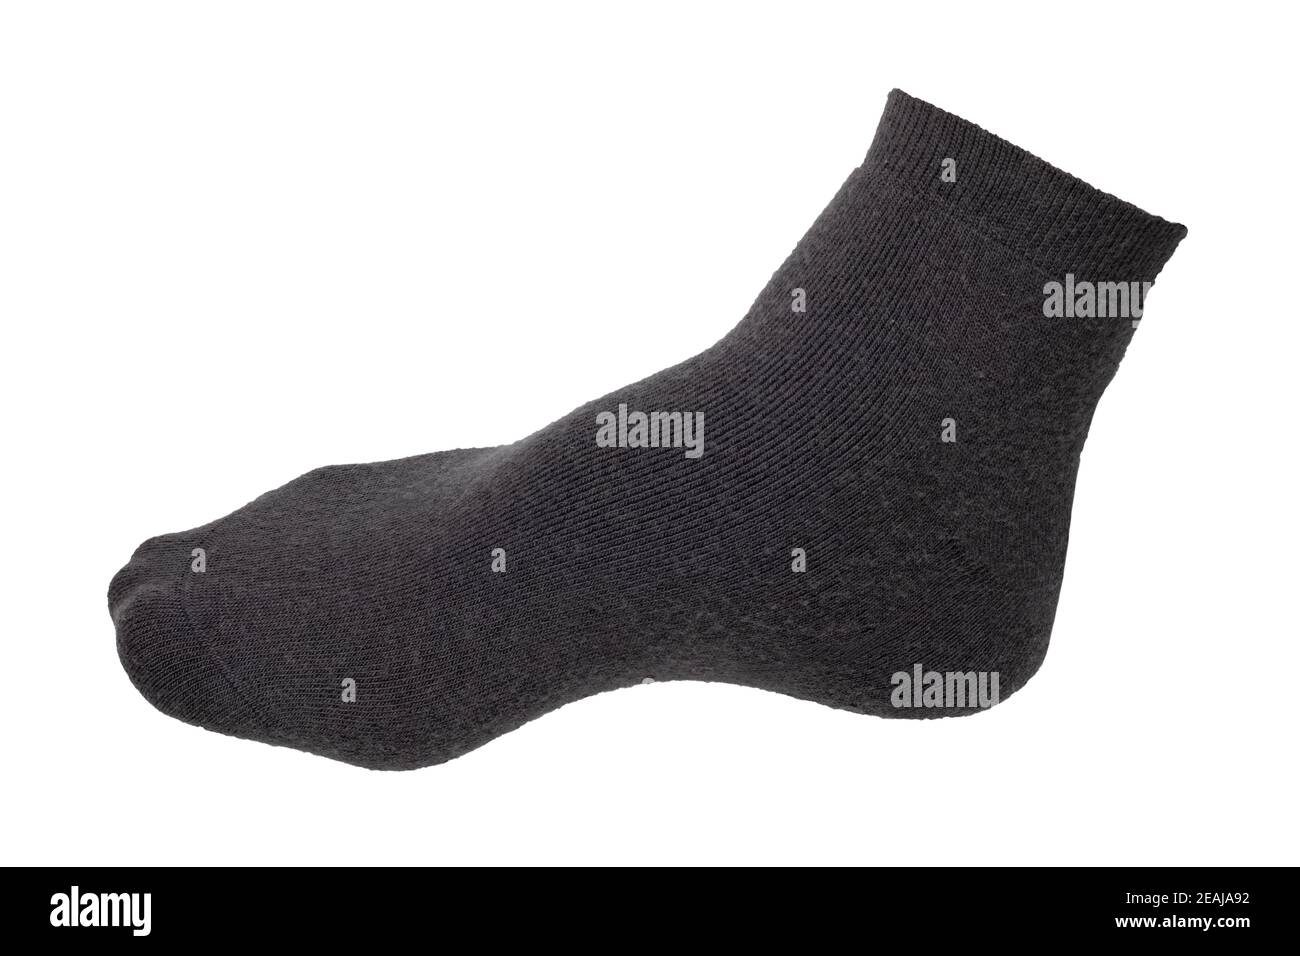 Calcetines aislados. Primer plano de un calcetín negro de lana caliente para el invierno frío aislado sobre un fondo blanco. Macro fotógrafo. Foto de stock